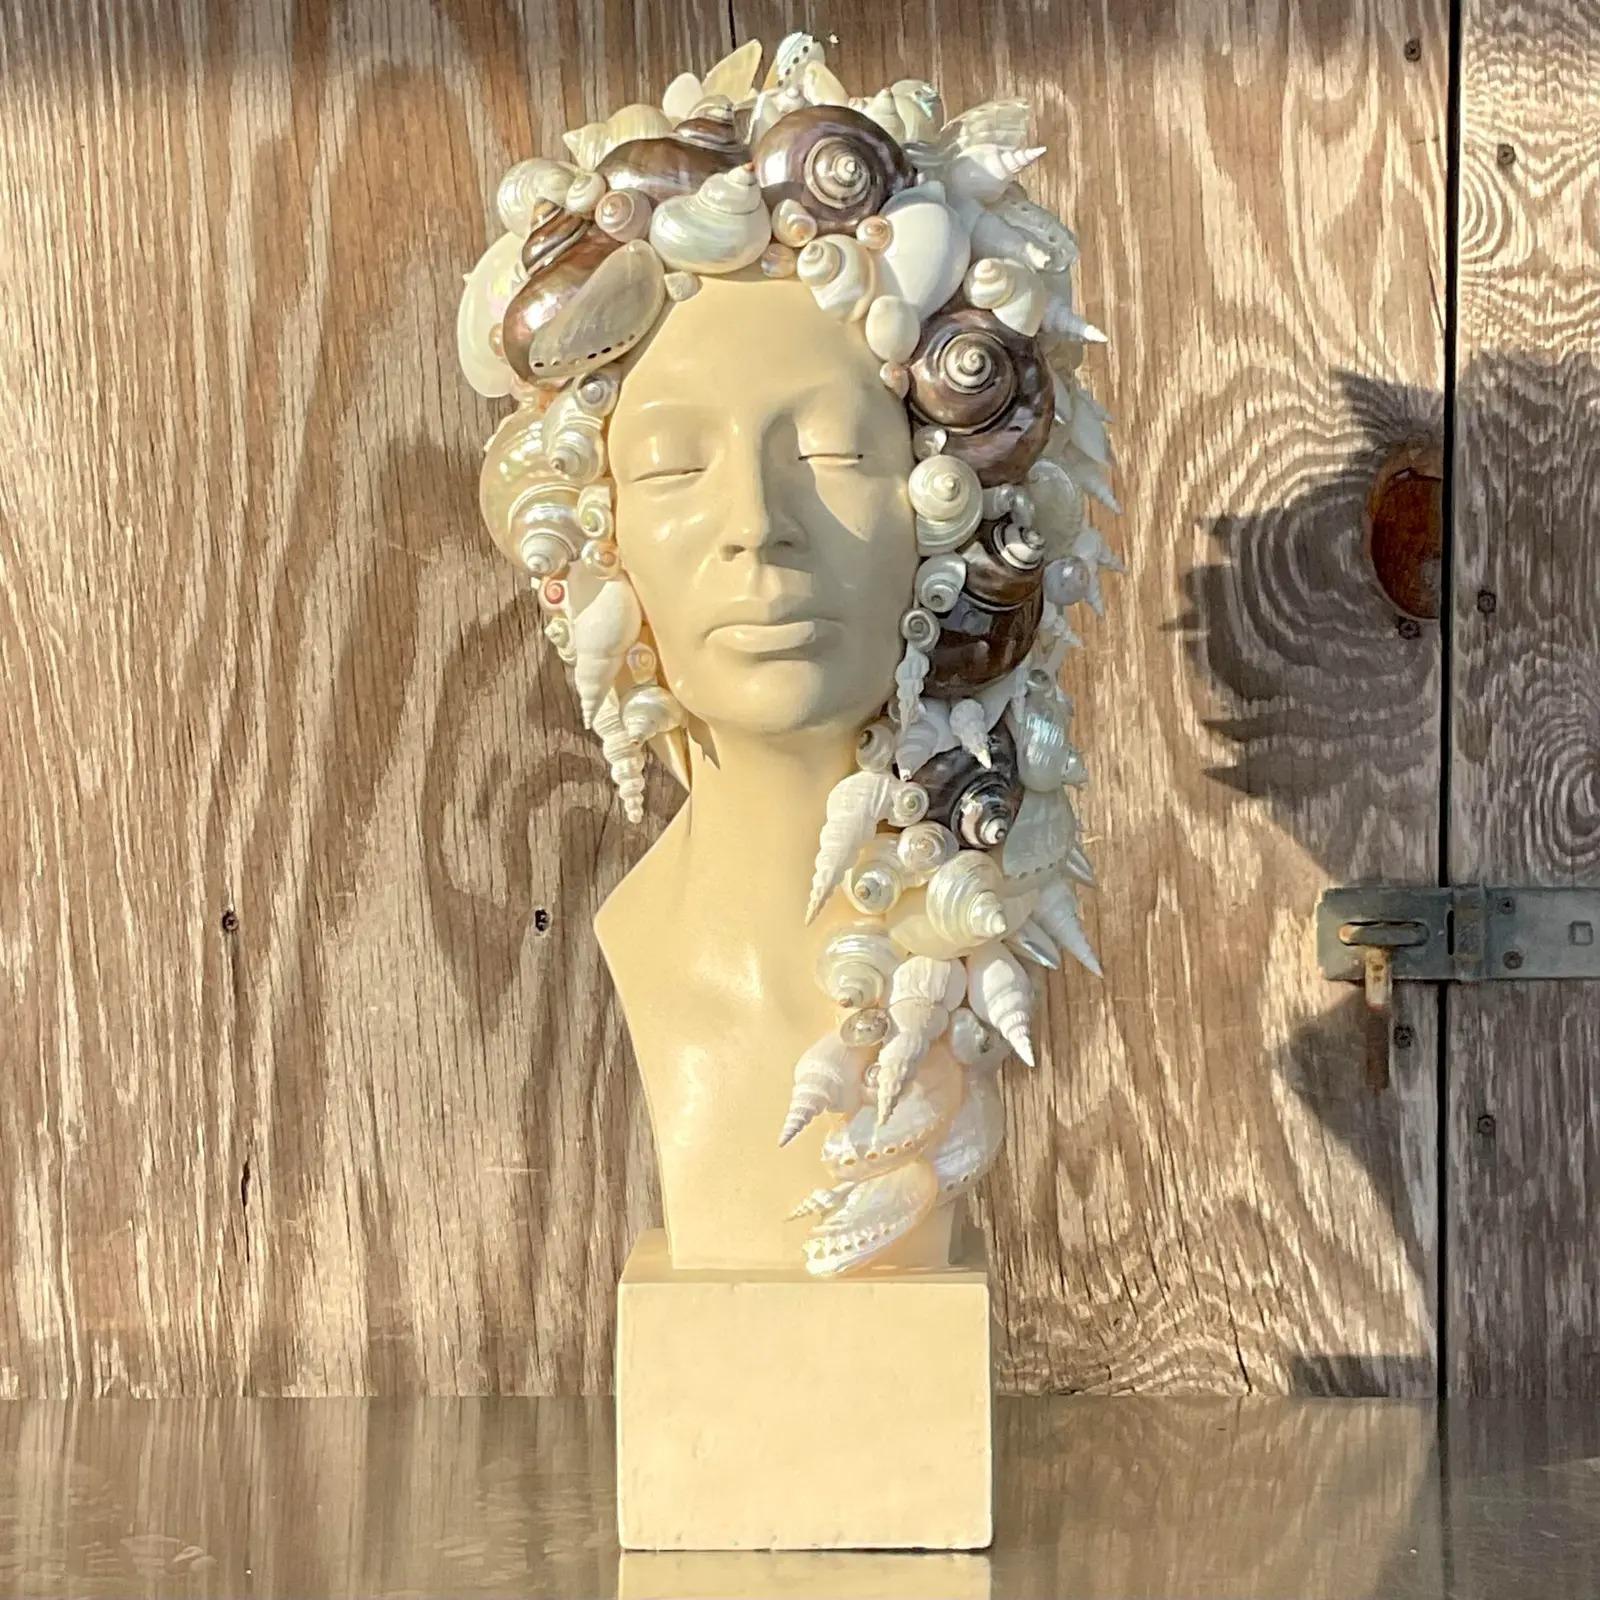 Un buste de femme Coastal vintage exceptionnel. Un beau profil de femme sereine. Une magnifique collection de coquillages entoure sa tête et son cou. Acquis d'une propriété de Palm Beach.